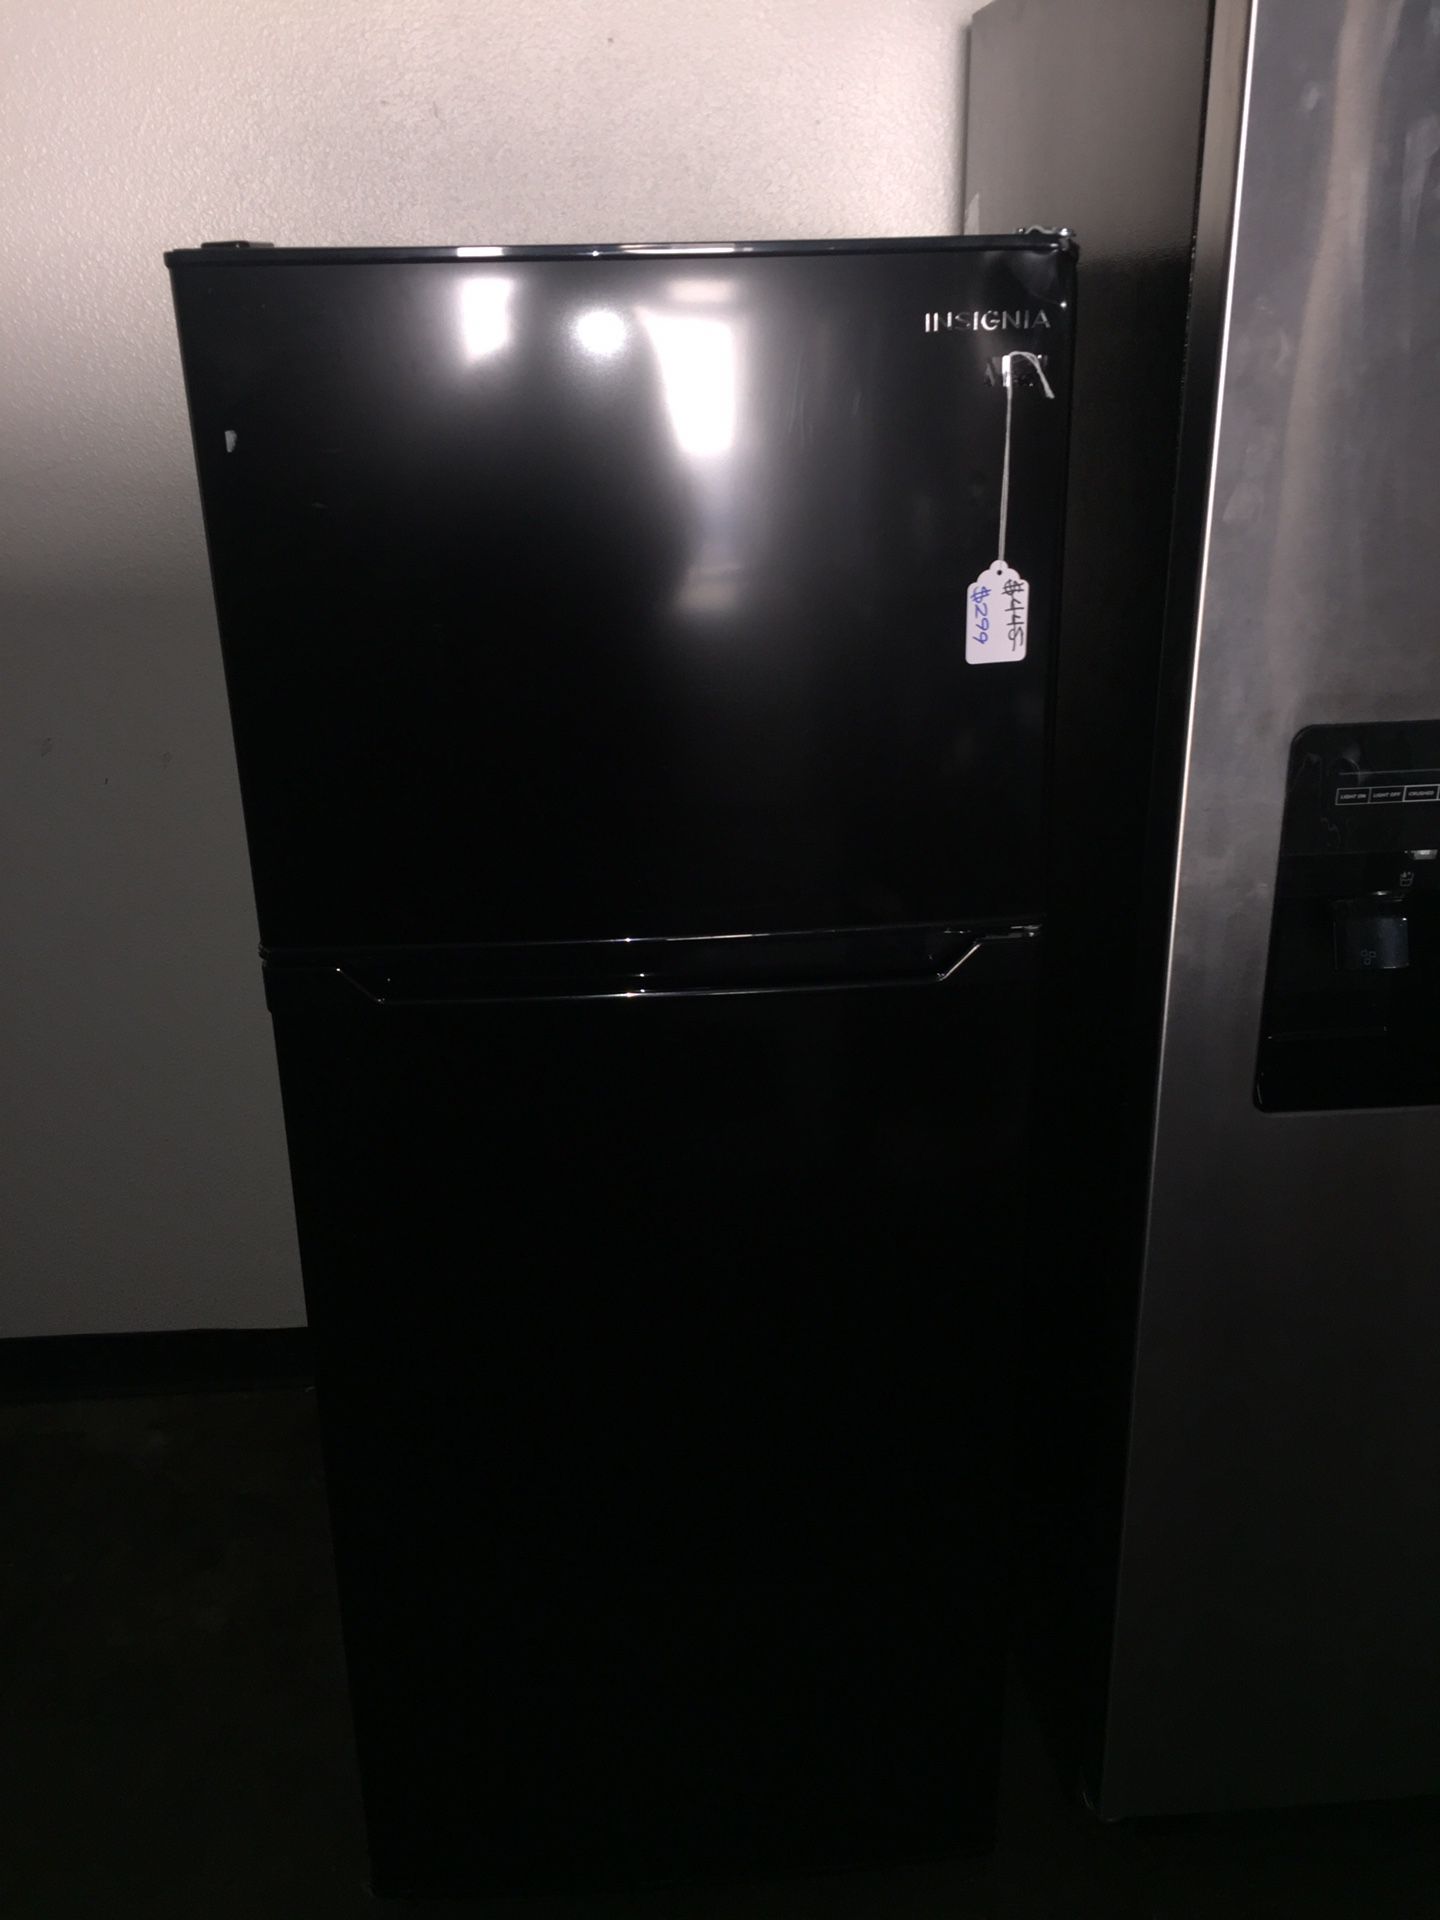 Insignia apartment / rv fridge